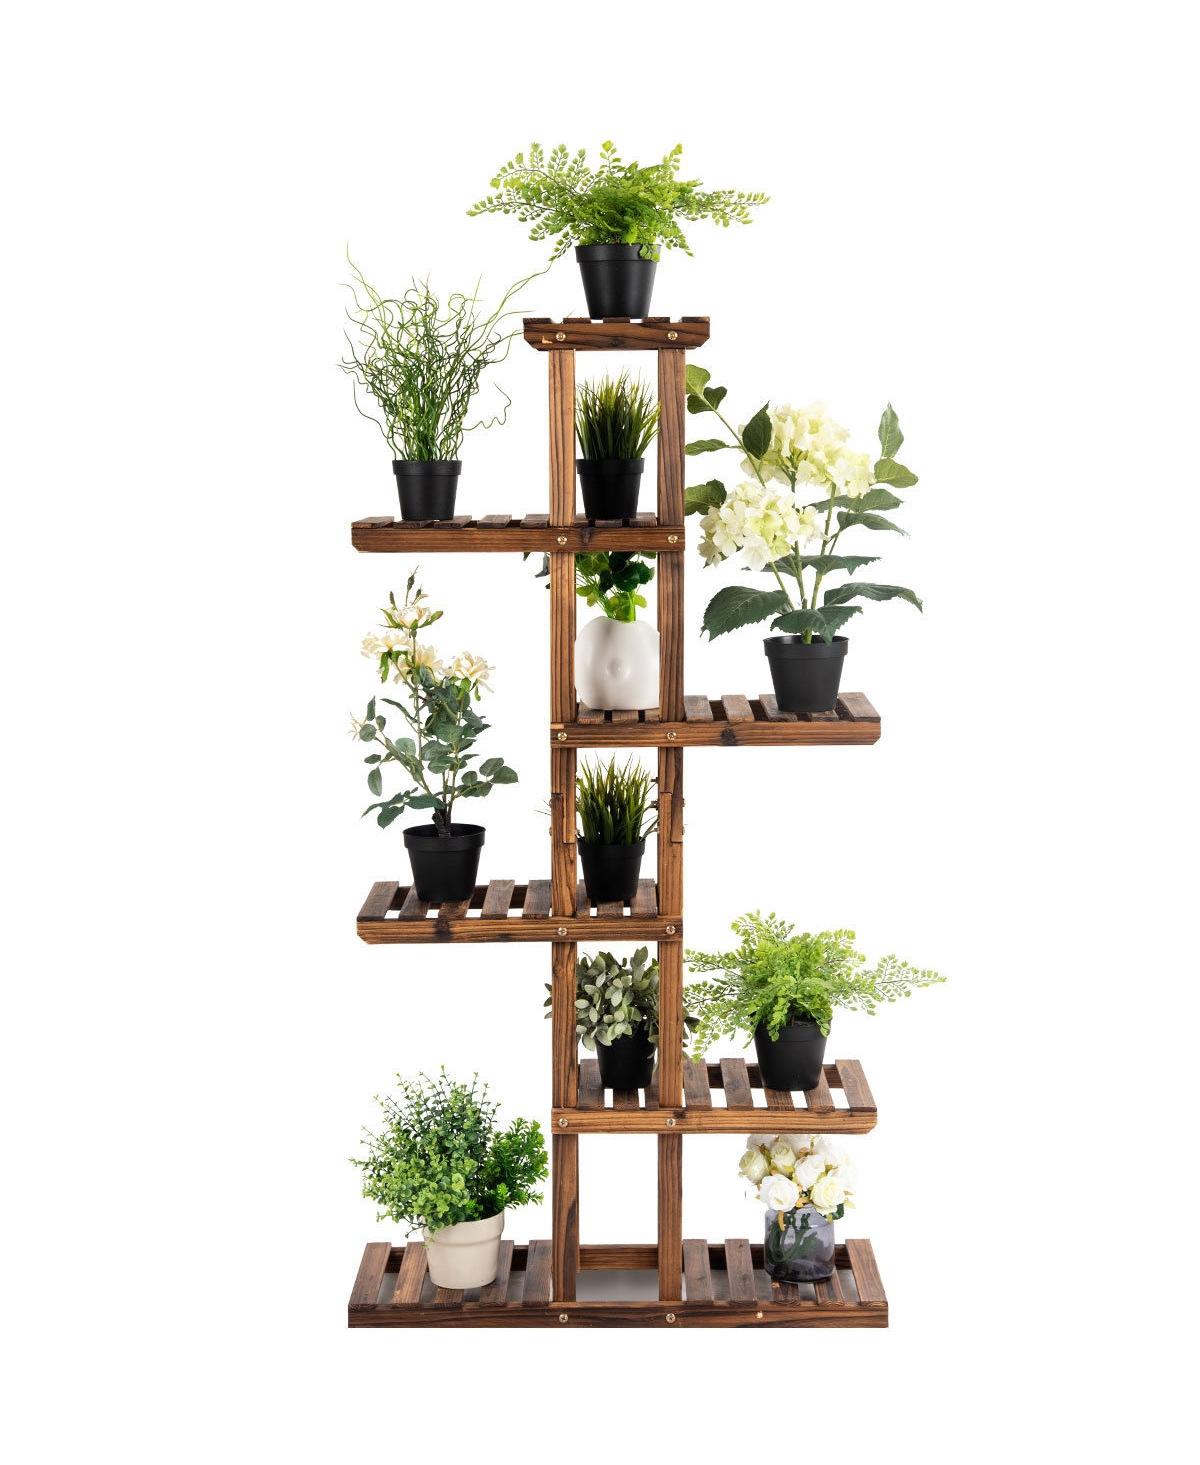 6 Tier Garden Wooden Shelf Storage Plant Rack Stand - Brown